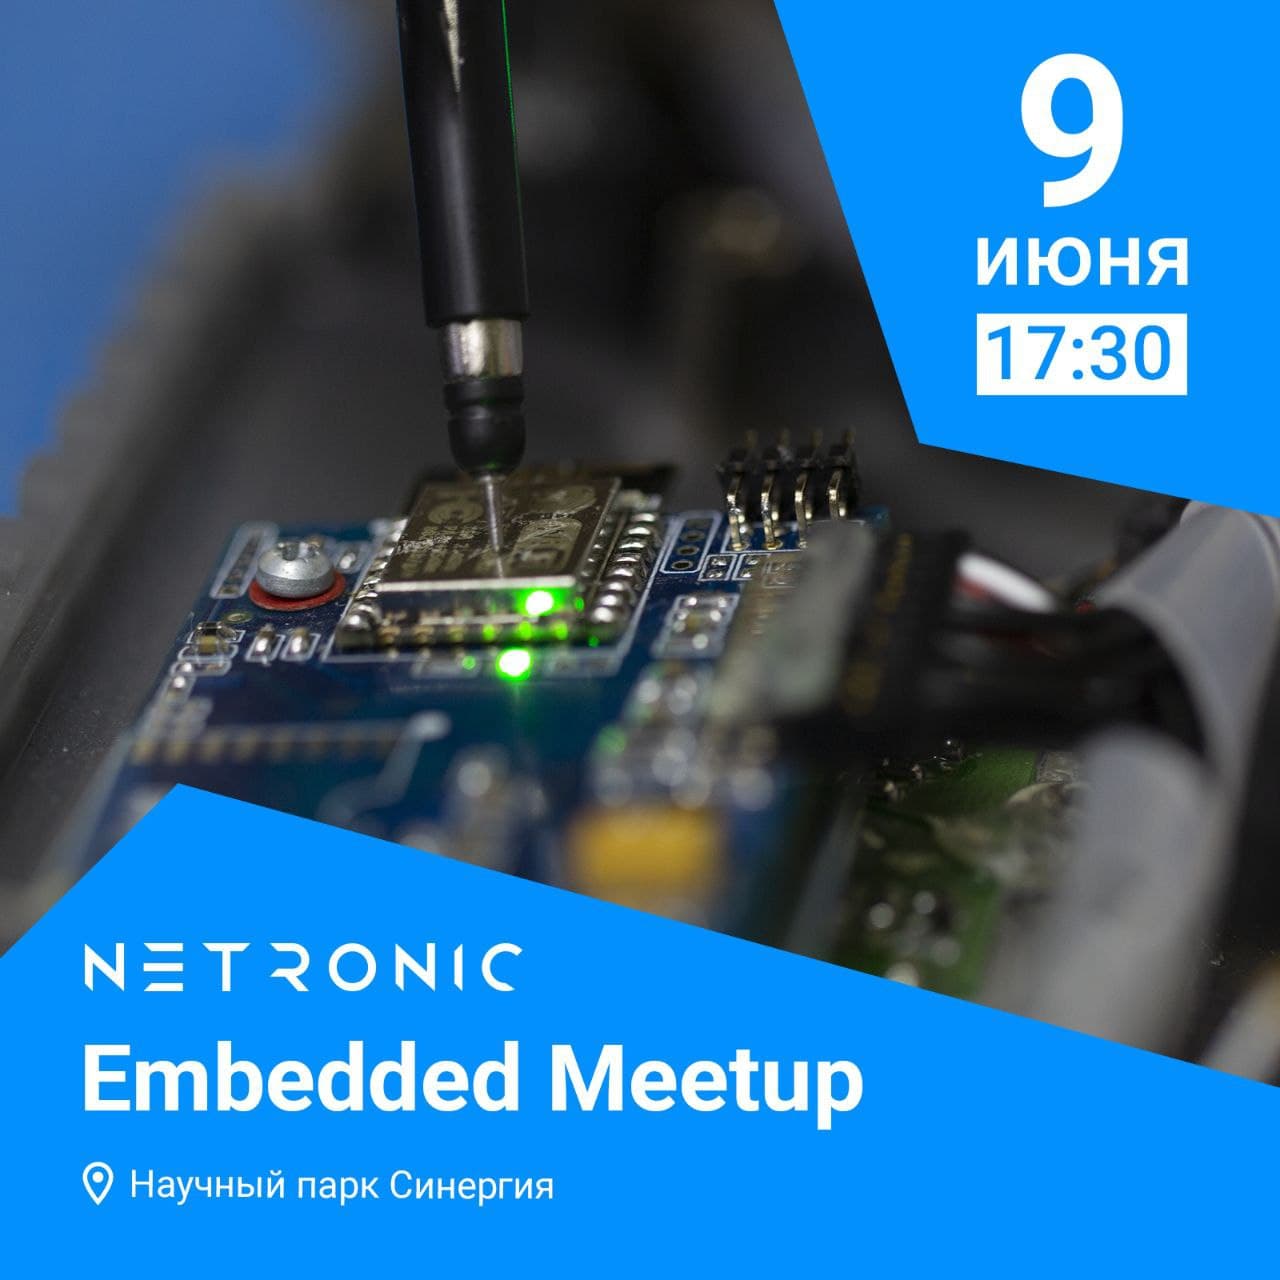 NETRONIC организовывает два мероприятия посвященных программированию микроконтроллеров и инженерным решениям